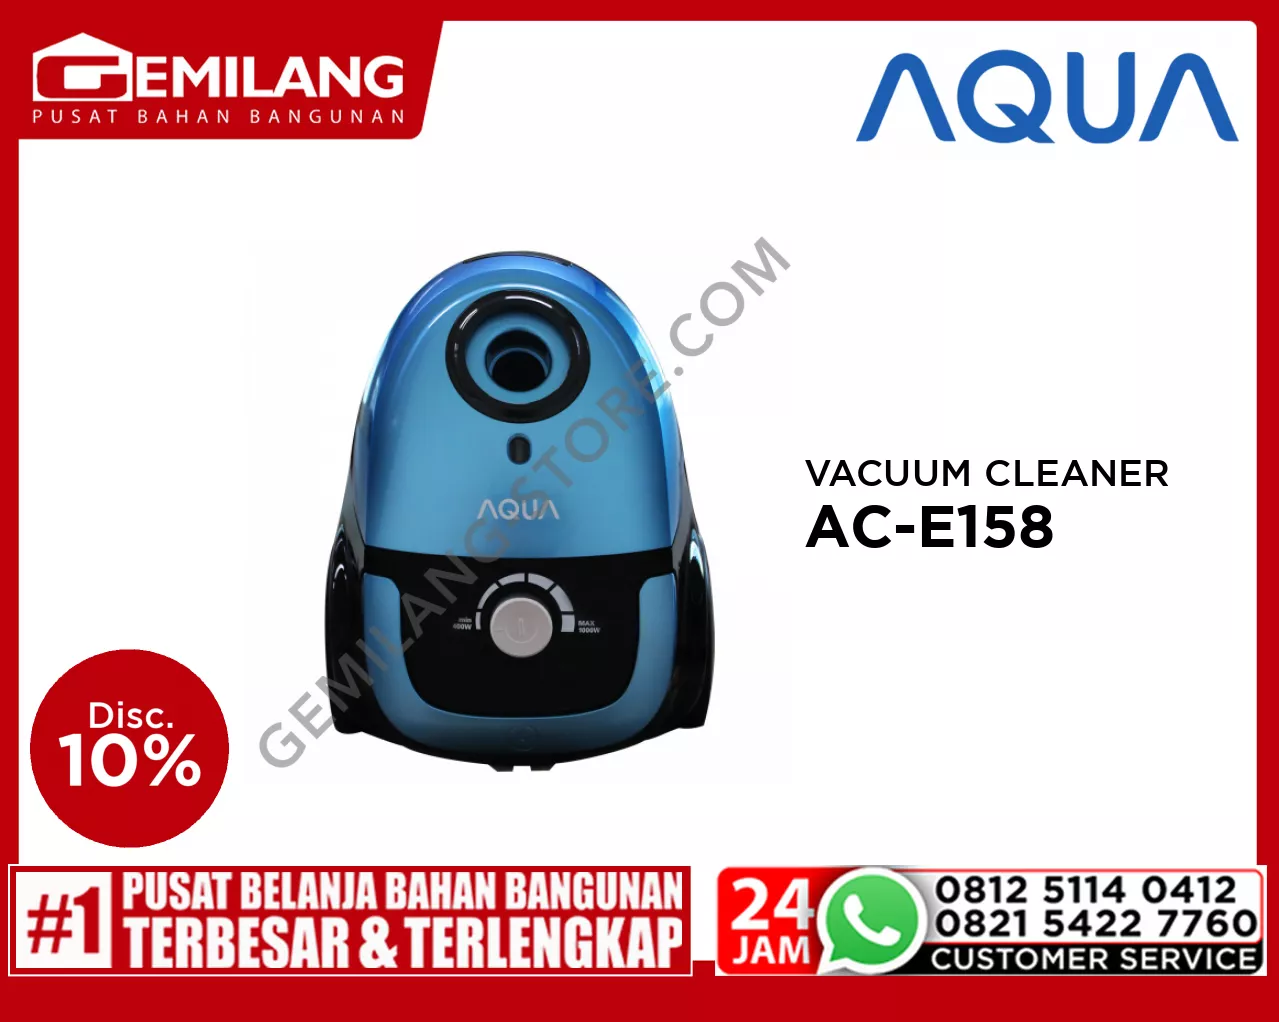 AQUA VACUUM CLEANER AC-E158